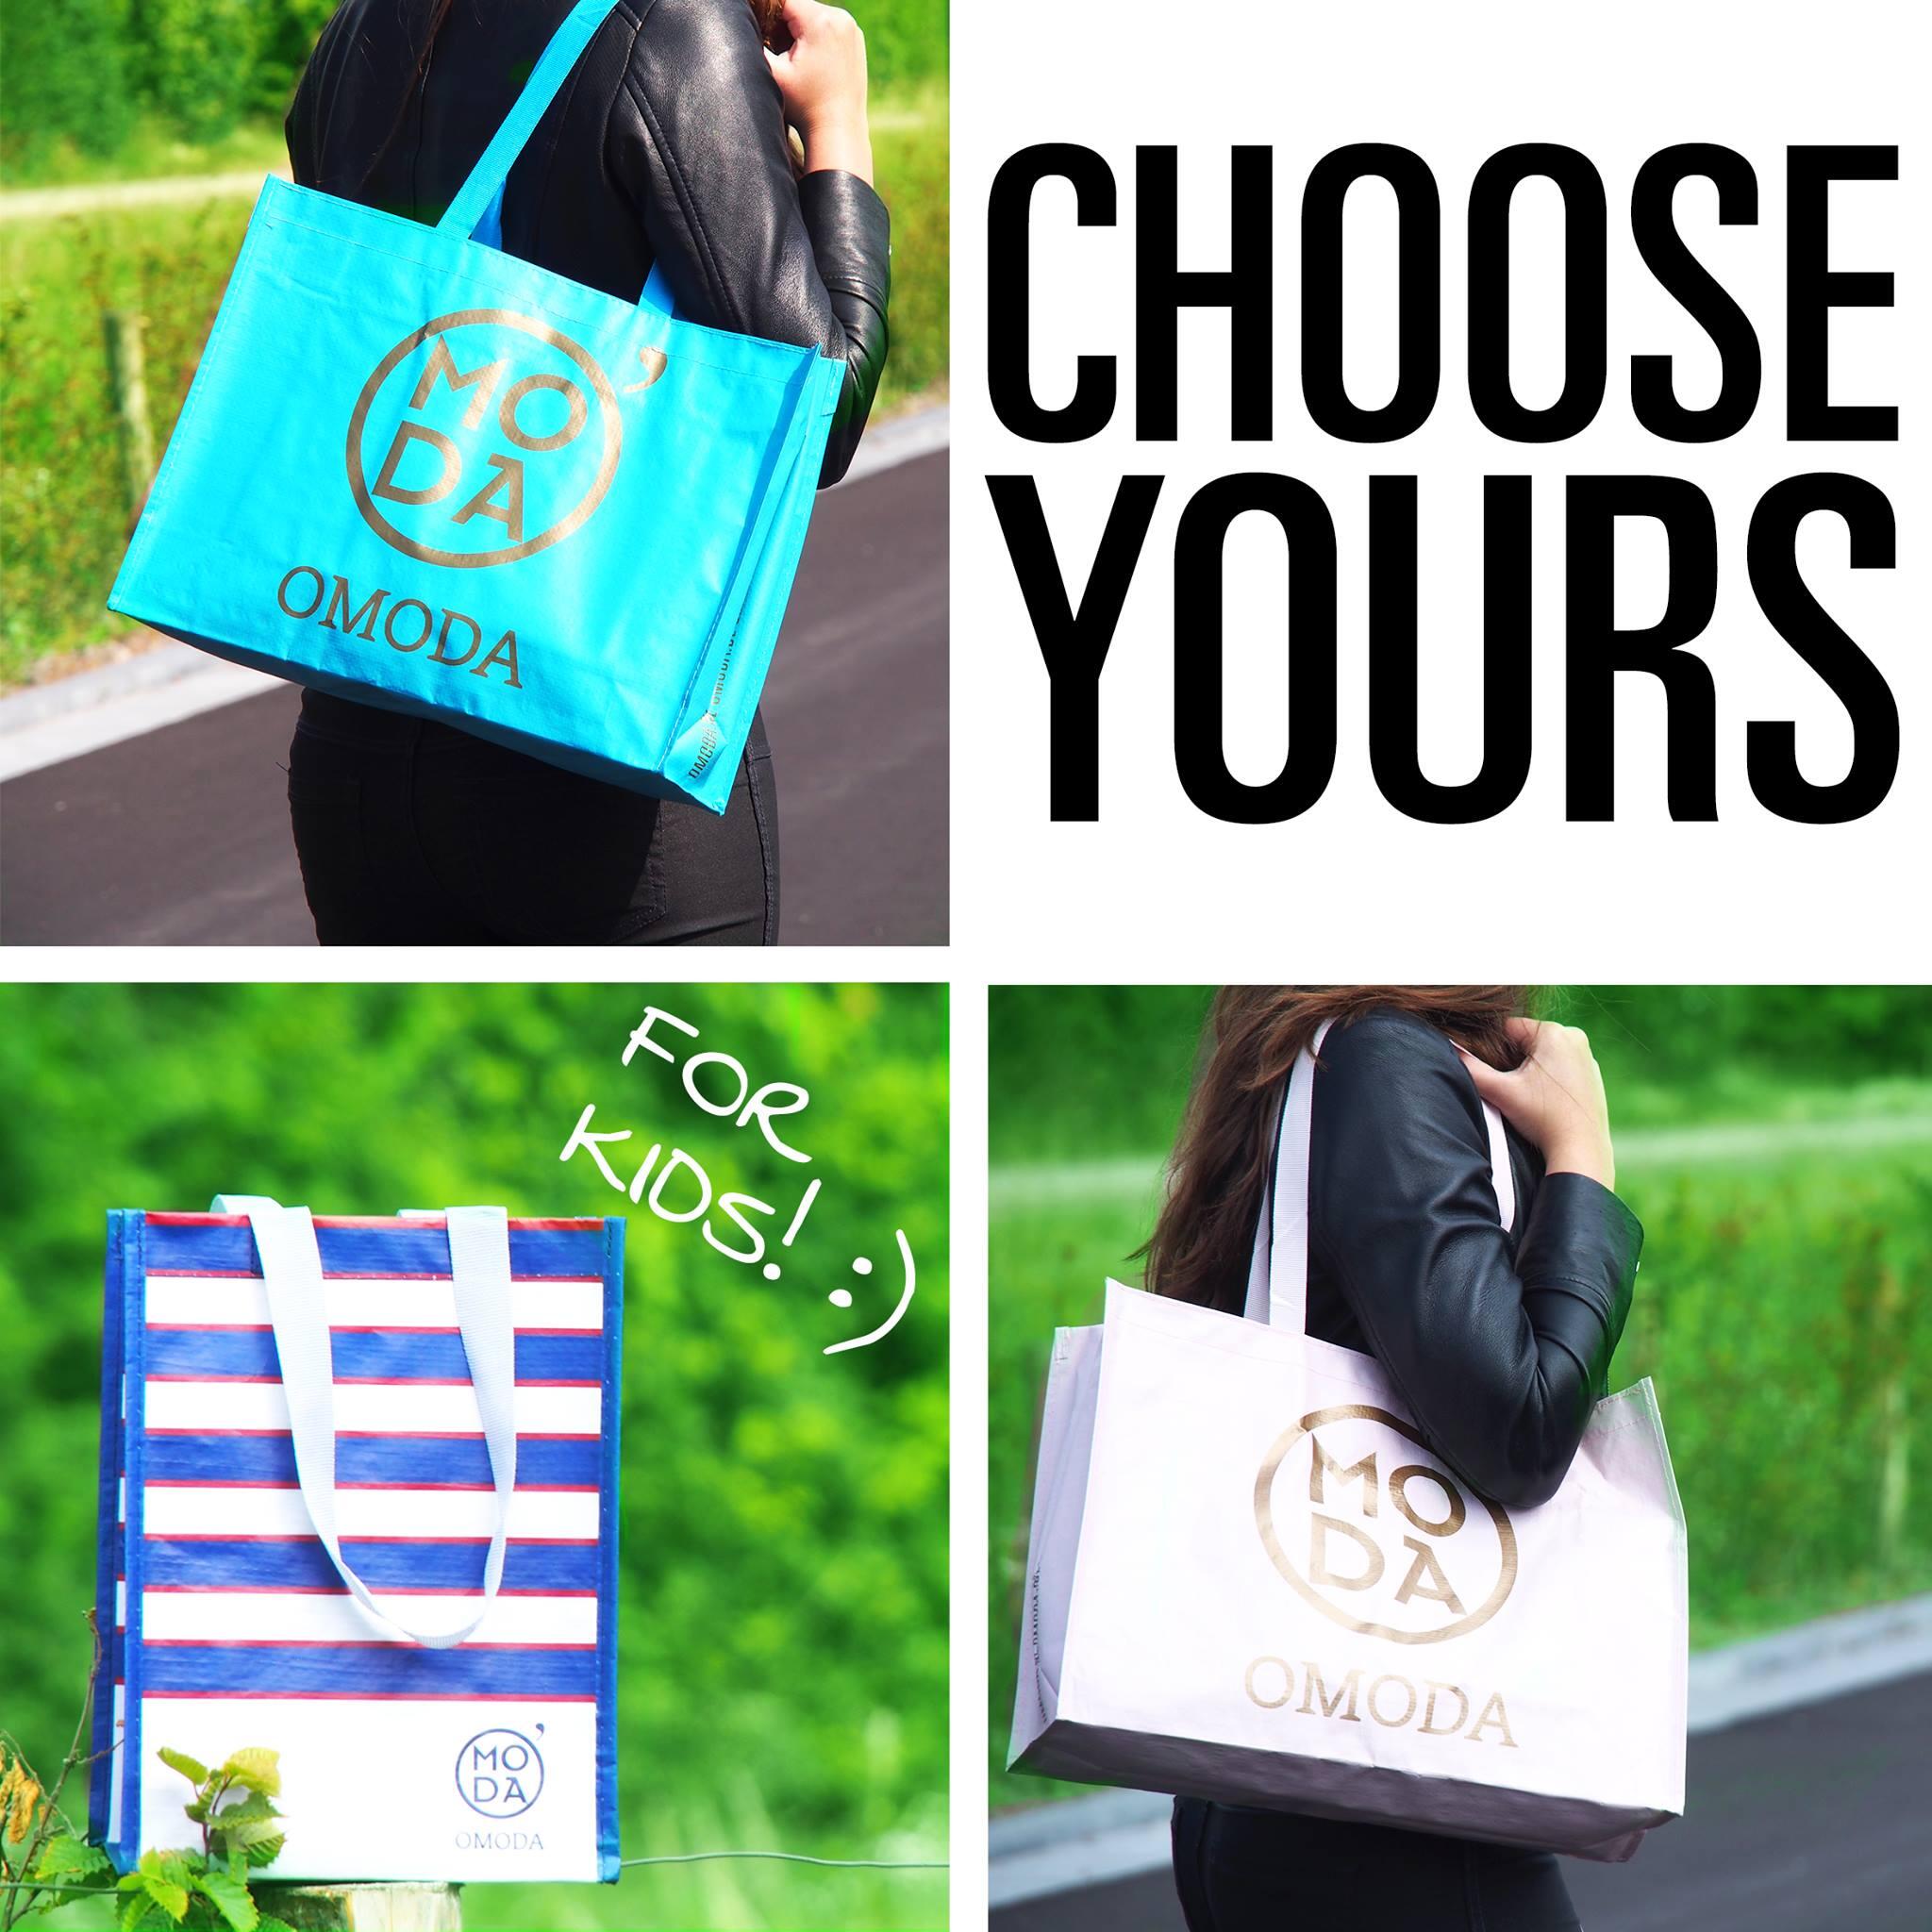 Omoda on Twitter: "Bij je kun nu kiezen uit deze Omoda-tassen. Welke is jouw favoriet? http://t.co/G0o2An4fFF" / Twitter